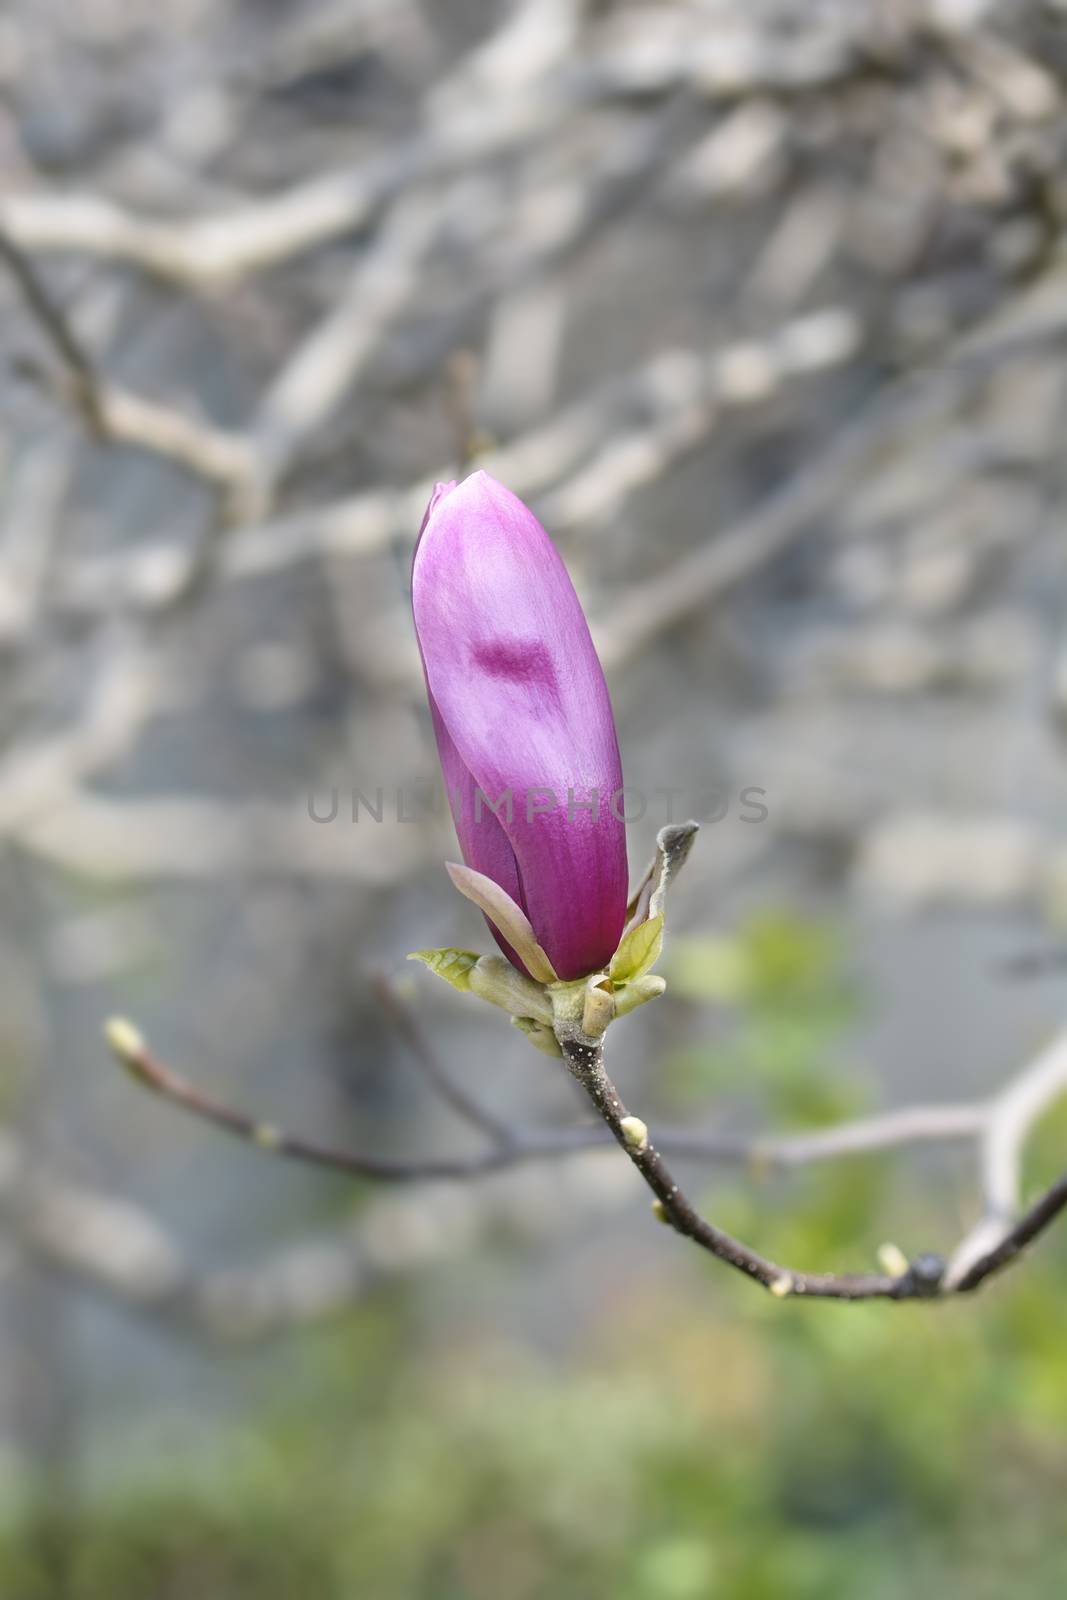 Magnolia tree by nahhan